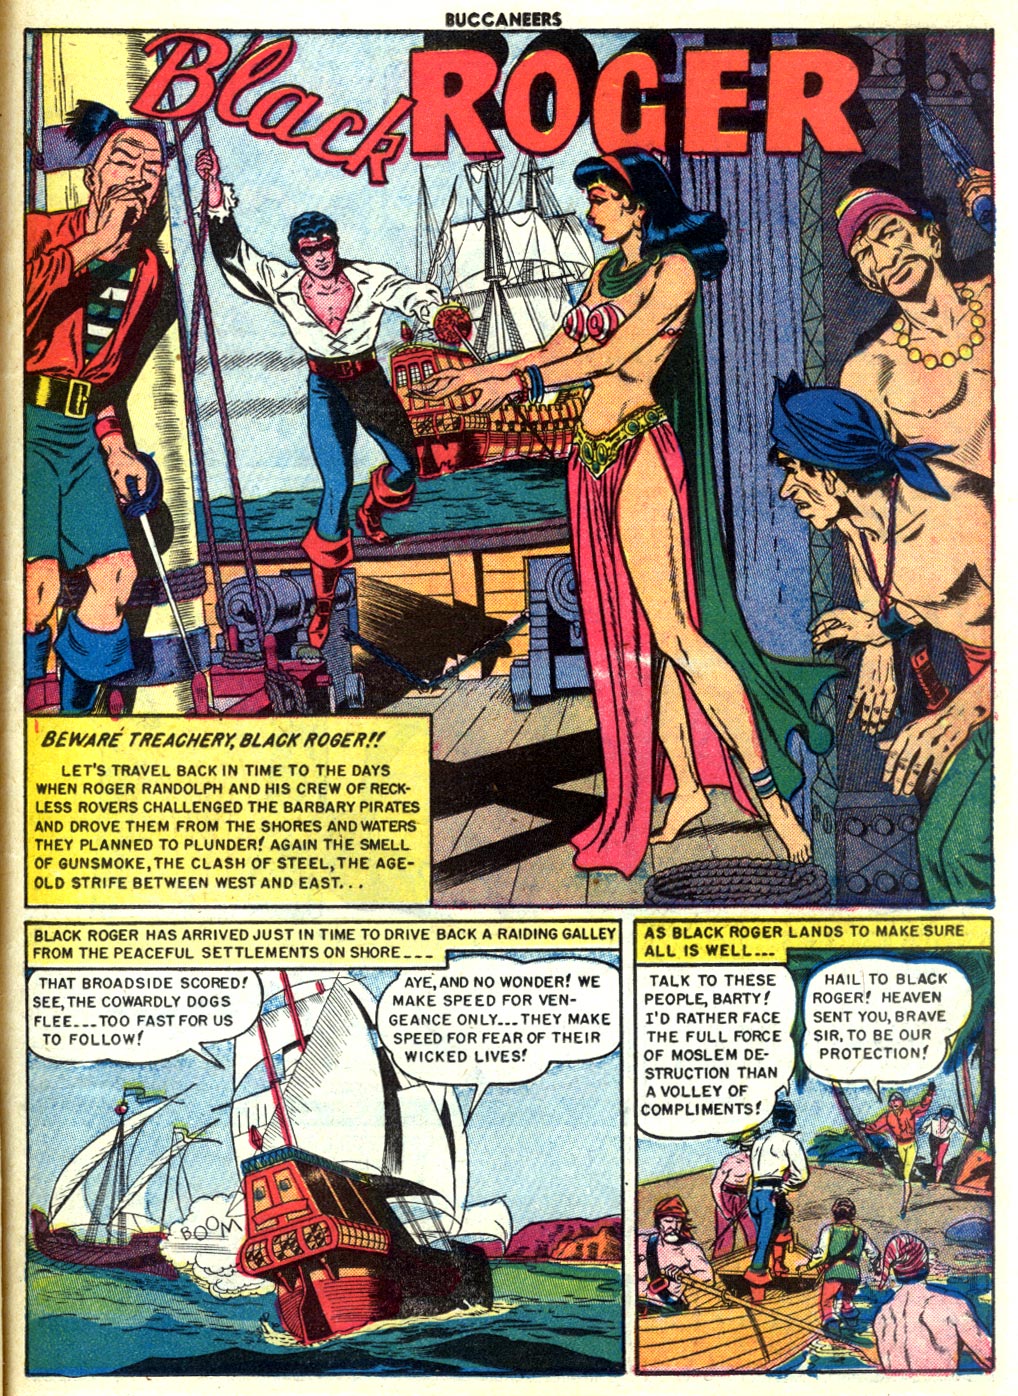 Read online Buccaneers comic -  Issue #22 - 27